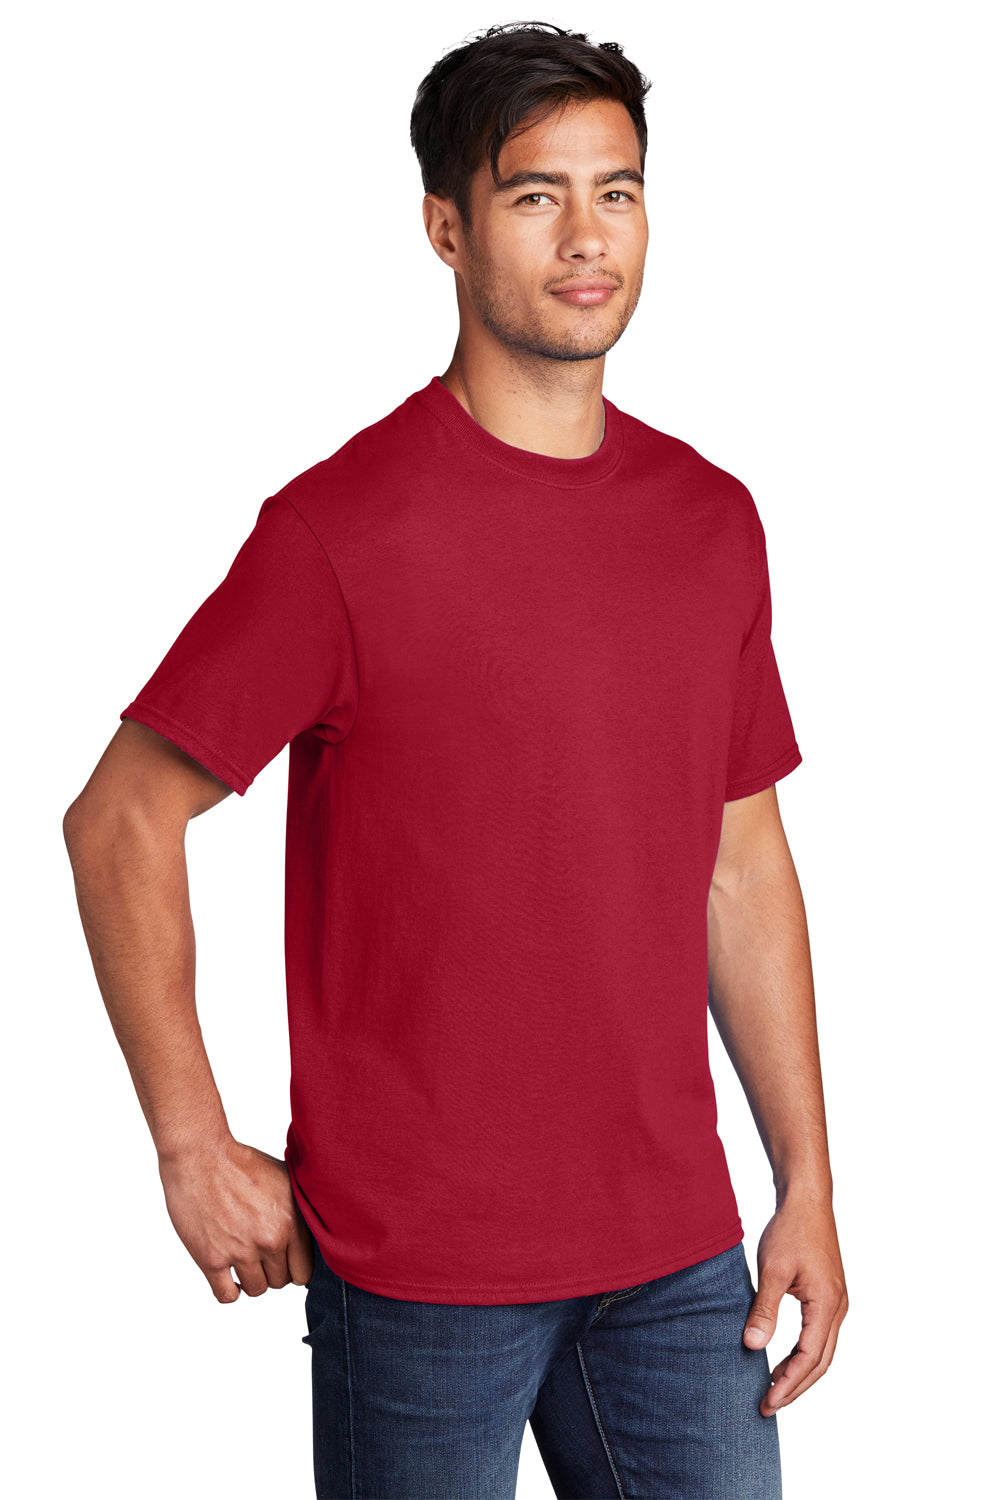 Port & Company PC54DTG Core Cotton DTG Short Sleeve Crewneck T-Shirt Red 3Q